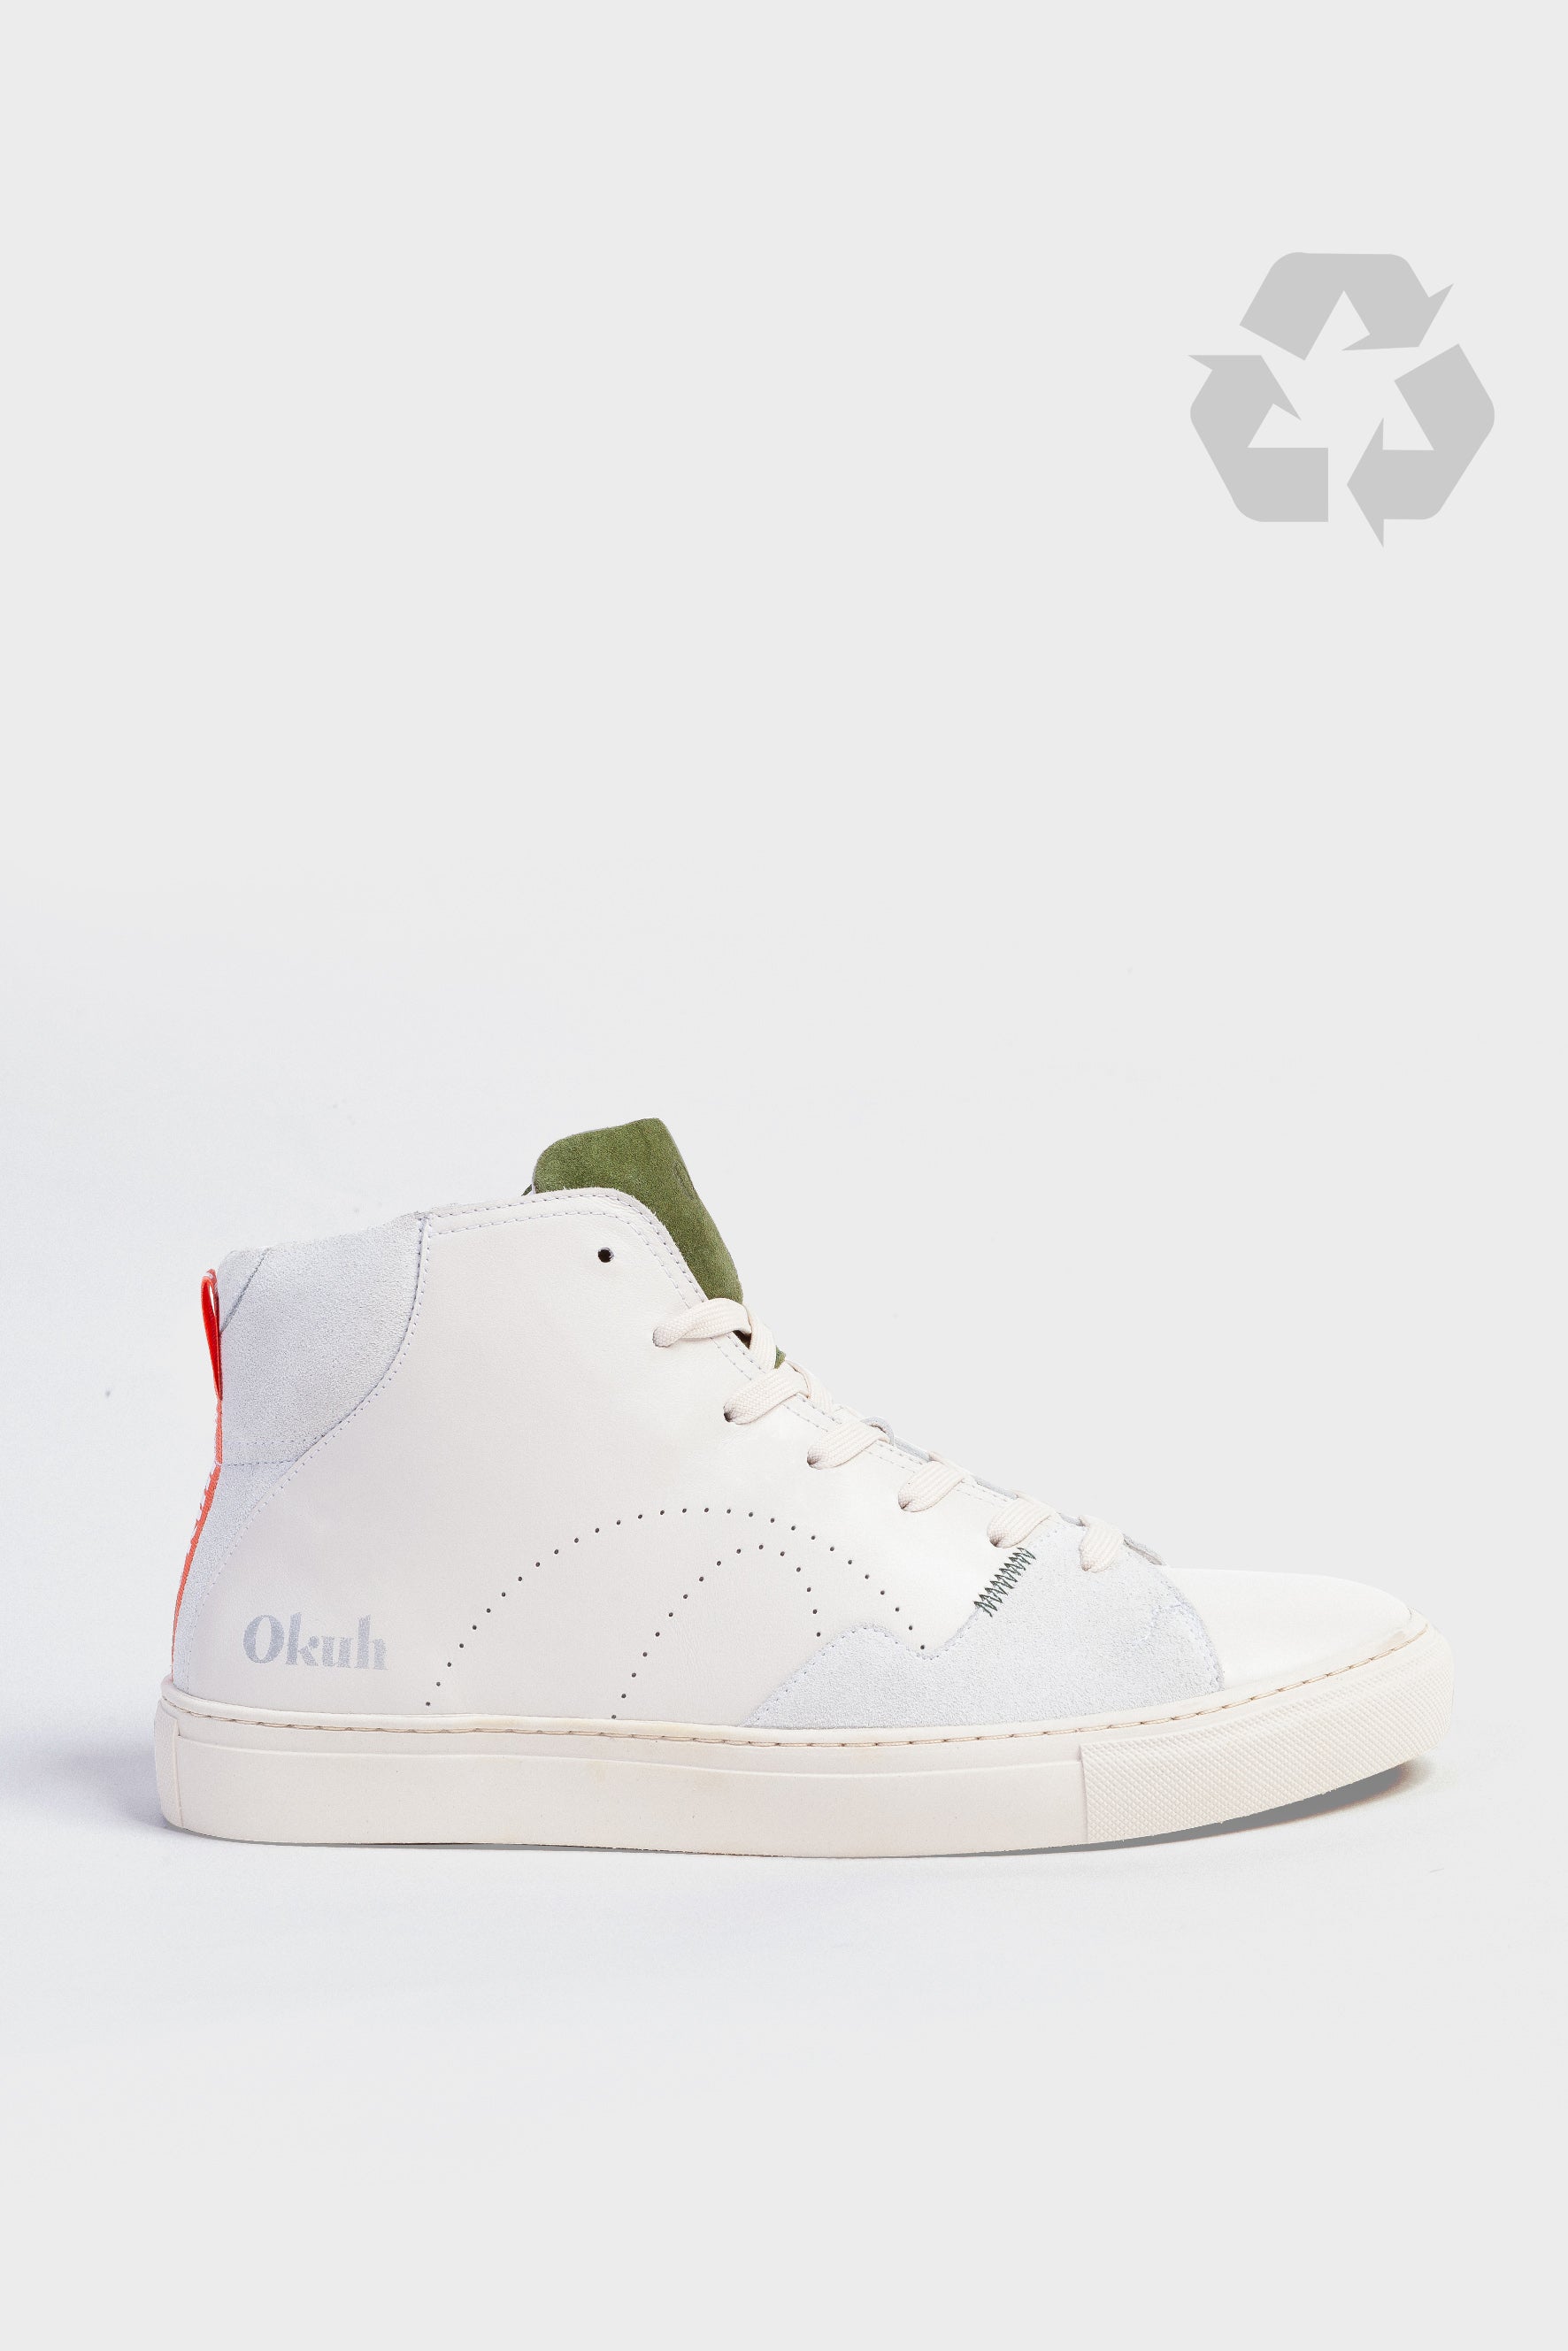 Okuh - White Ena Sneakers